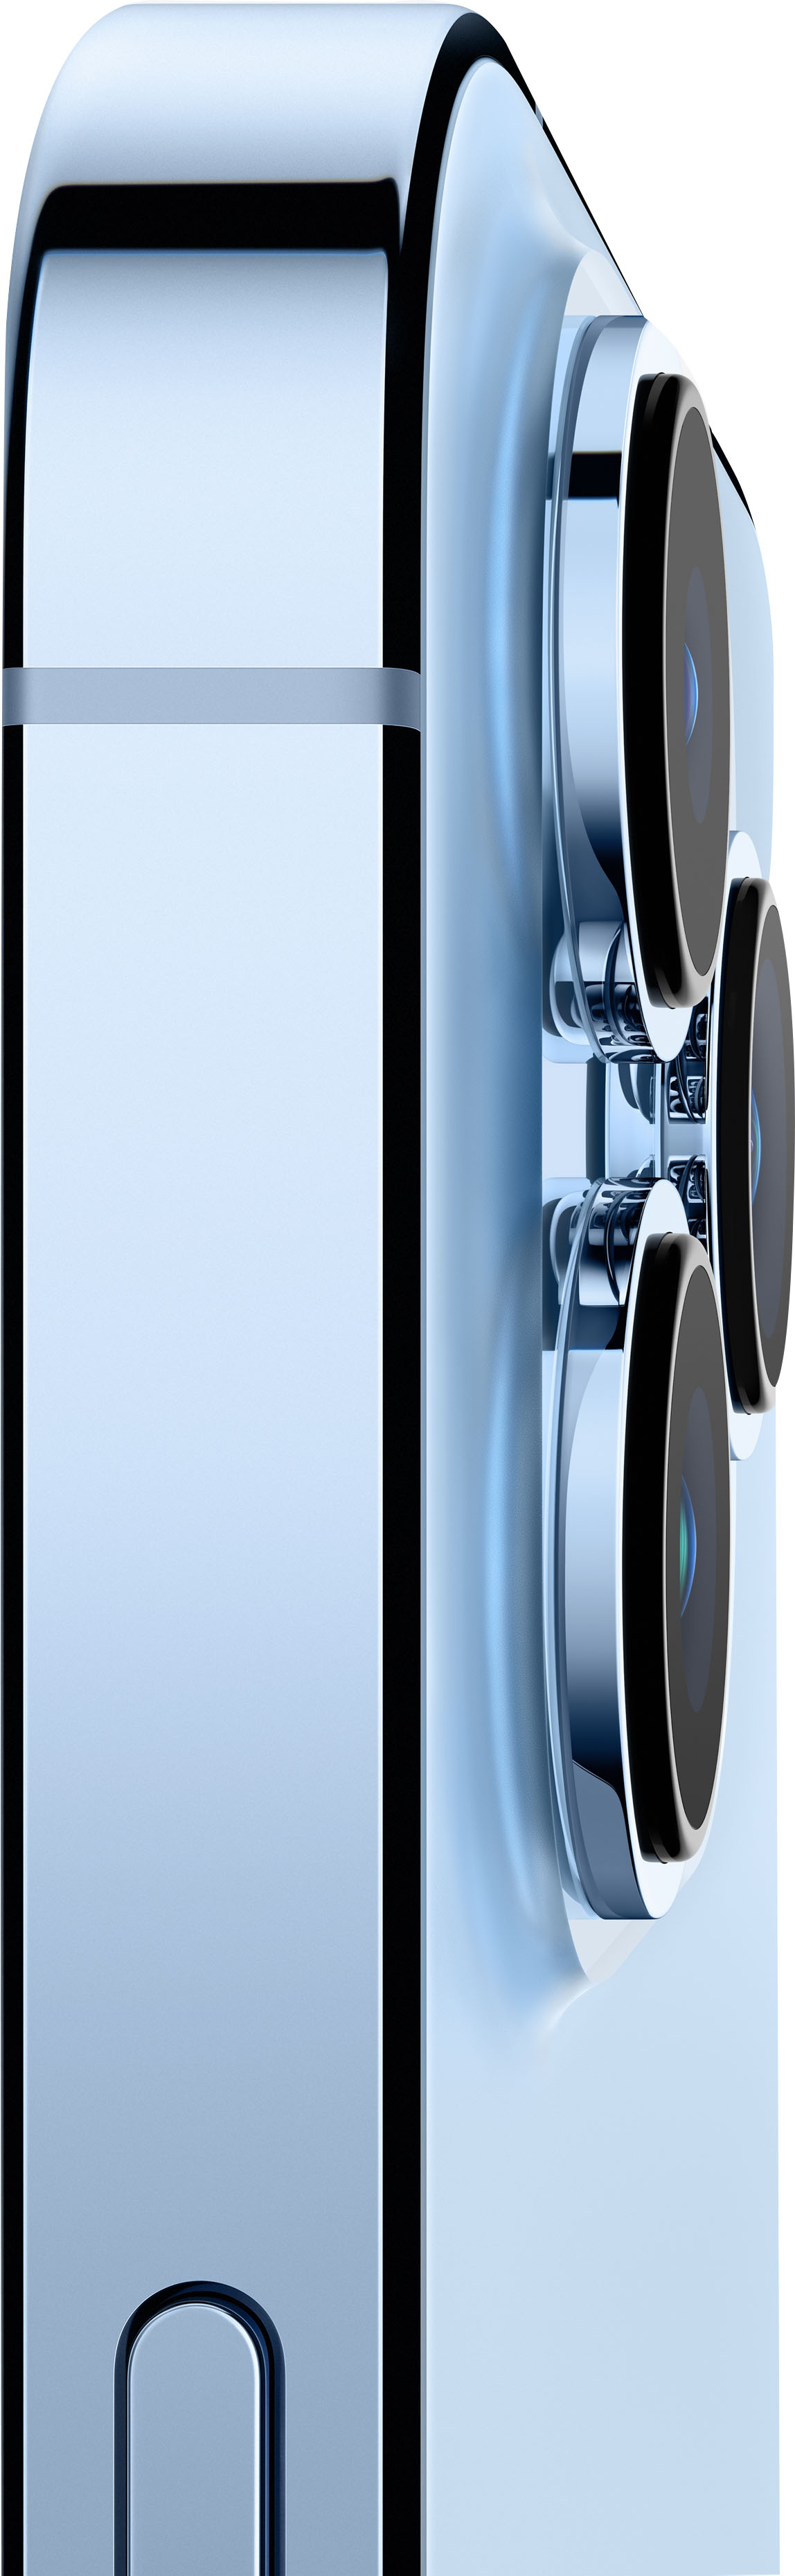 Apple iPhone 13 Pro Max 5G 128GB Sierra Blue (AT&T) MLKP3LL/A 